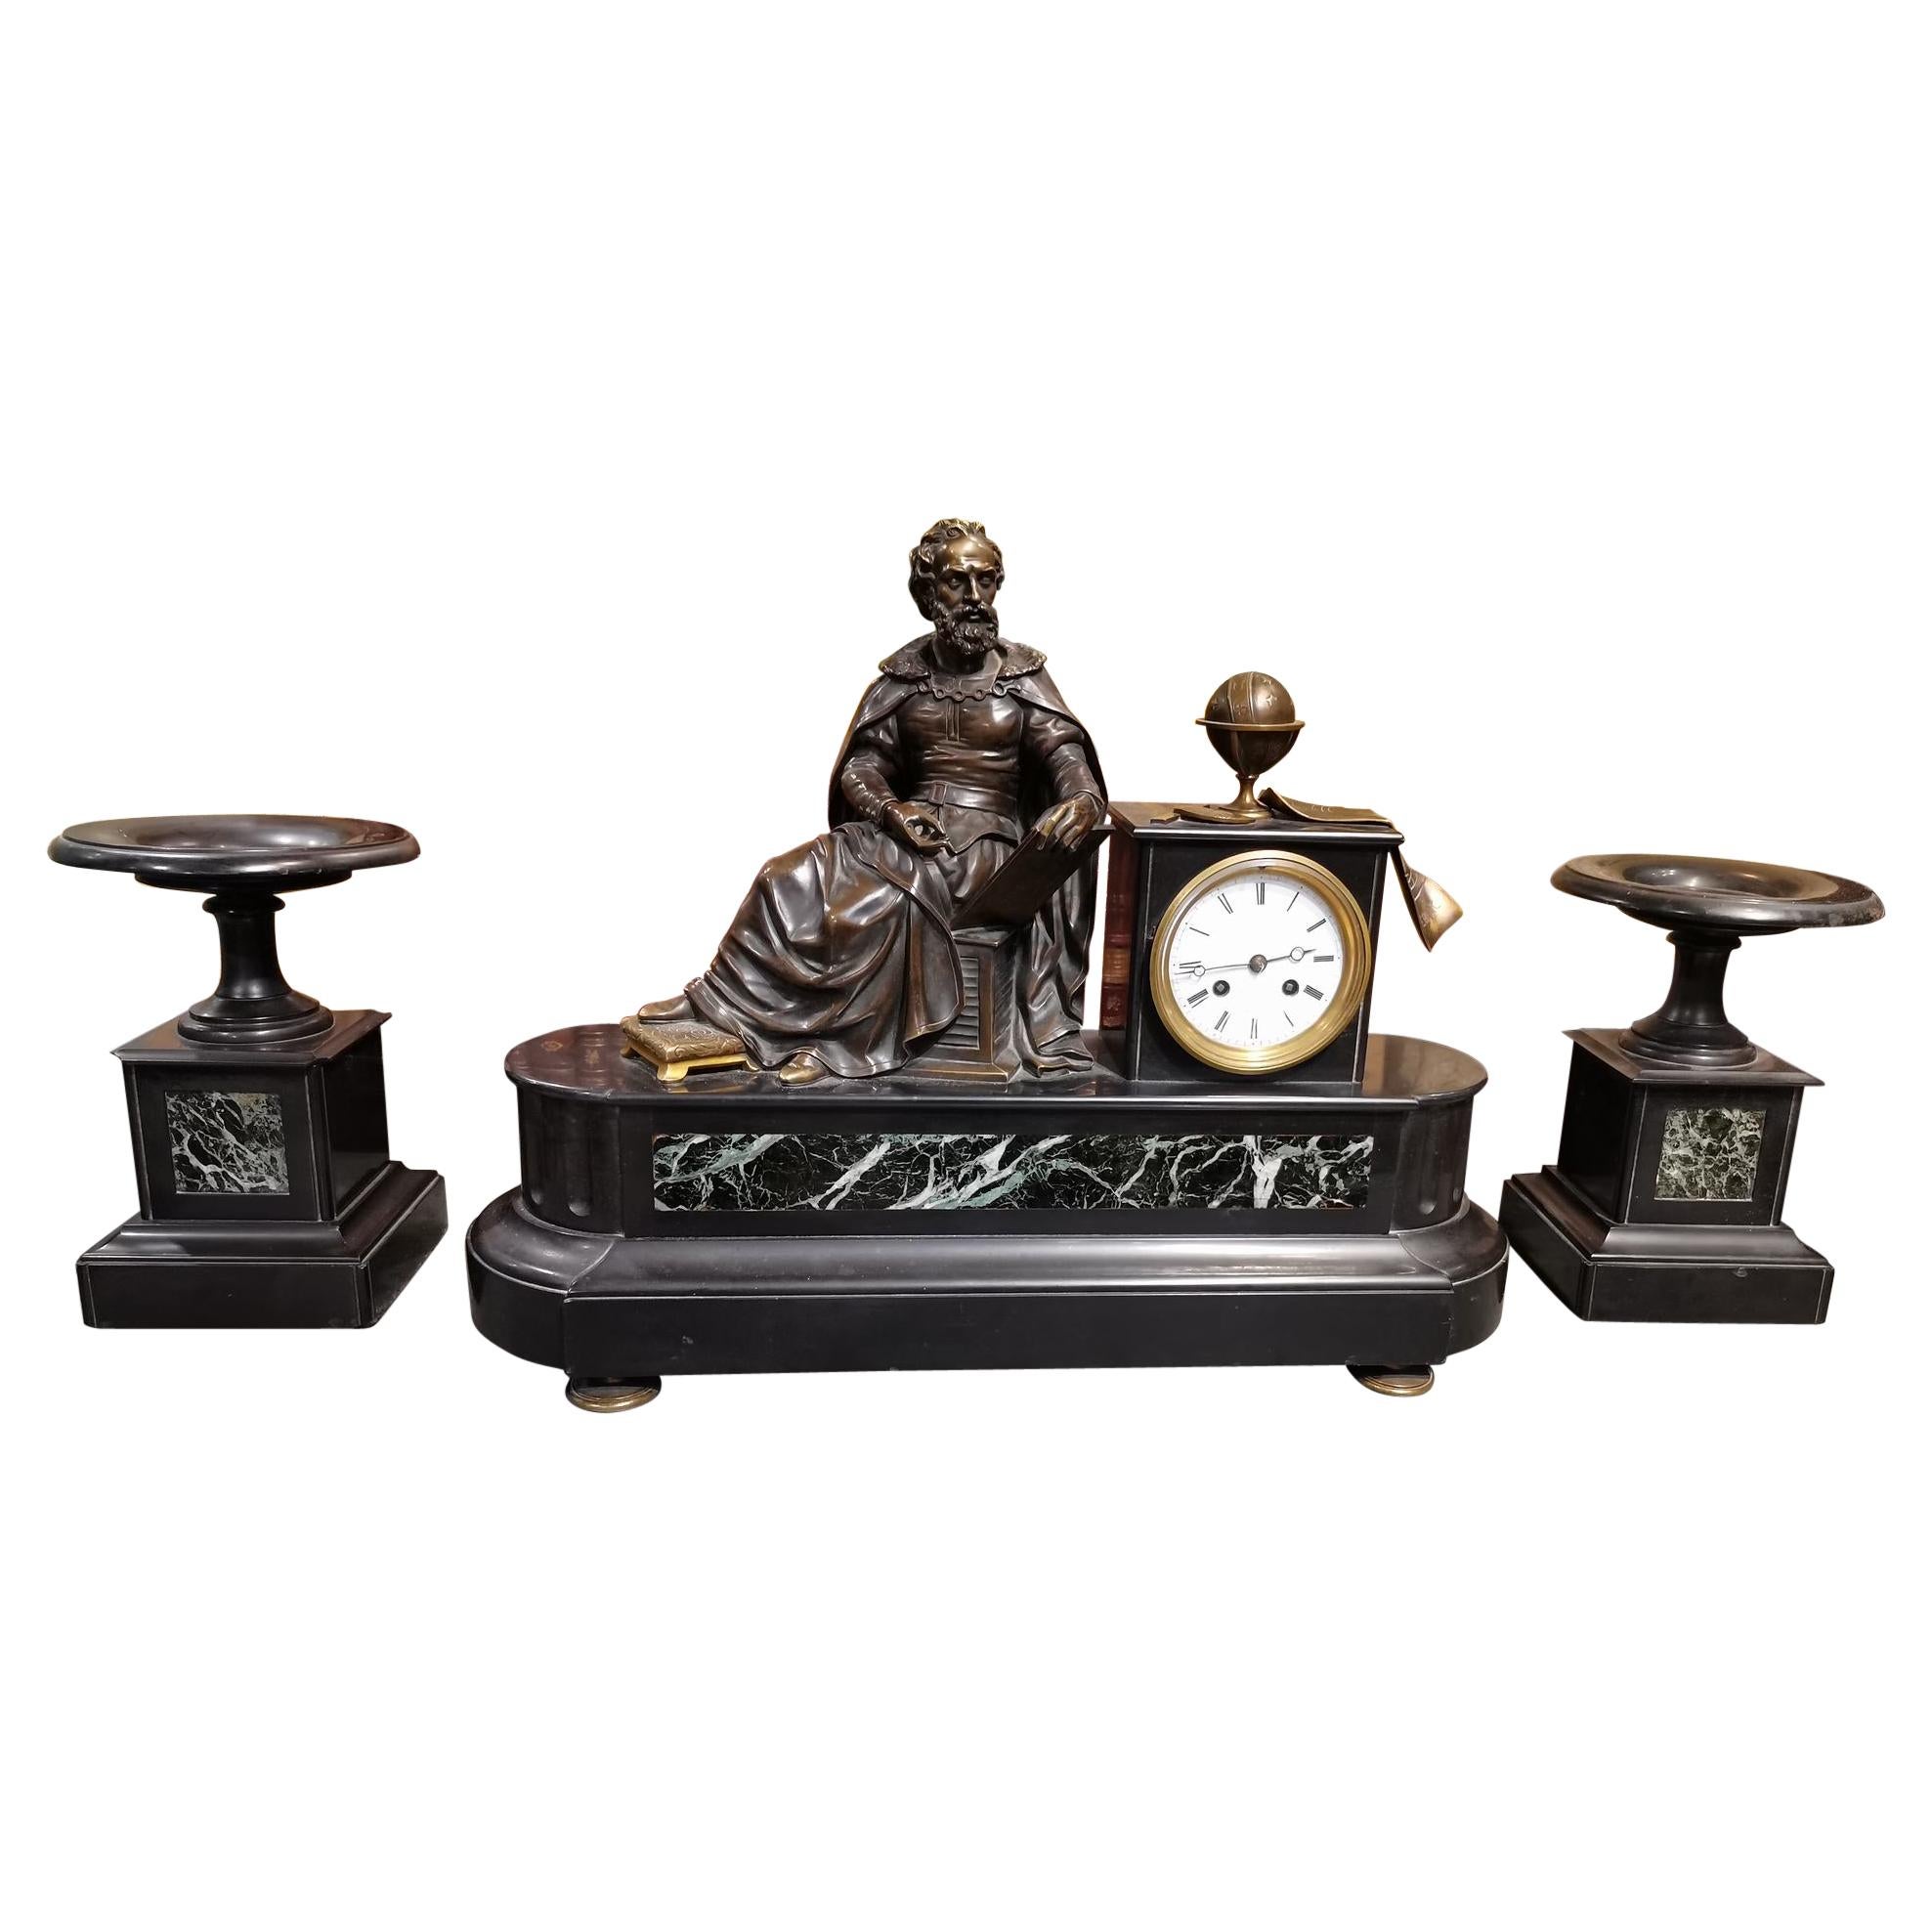 Horloge en marbre et bronze avec allégorie de l'astronomie représentant Copernico